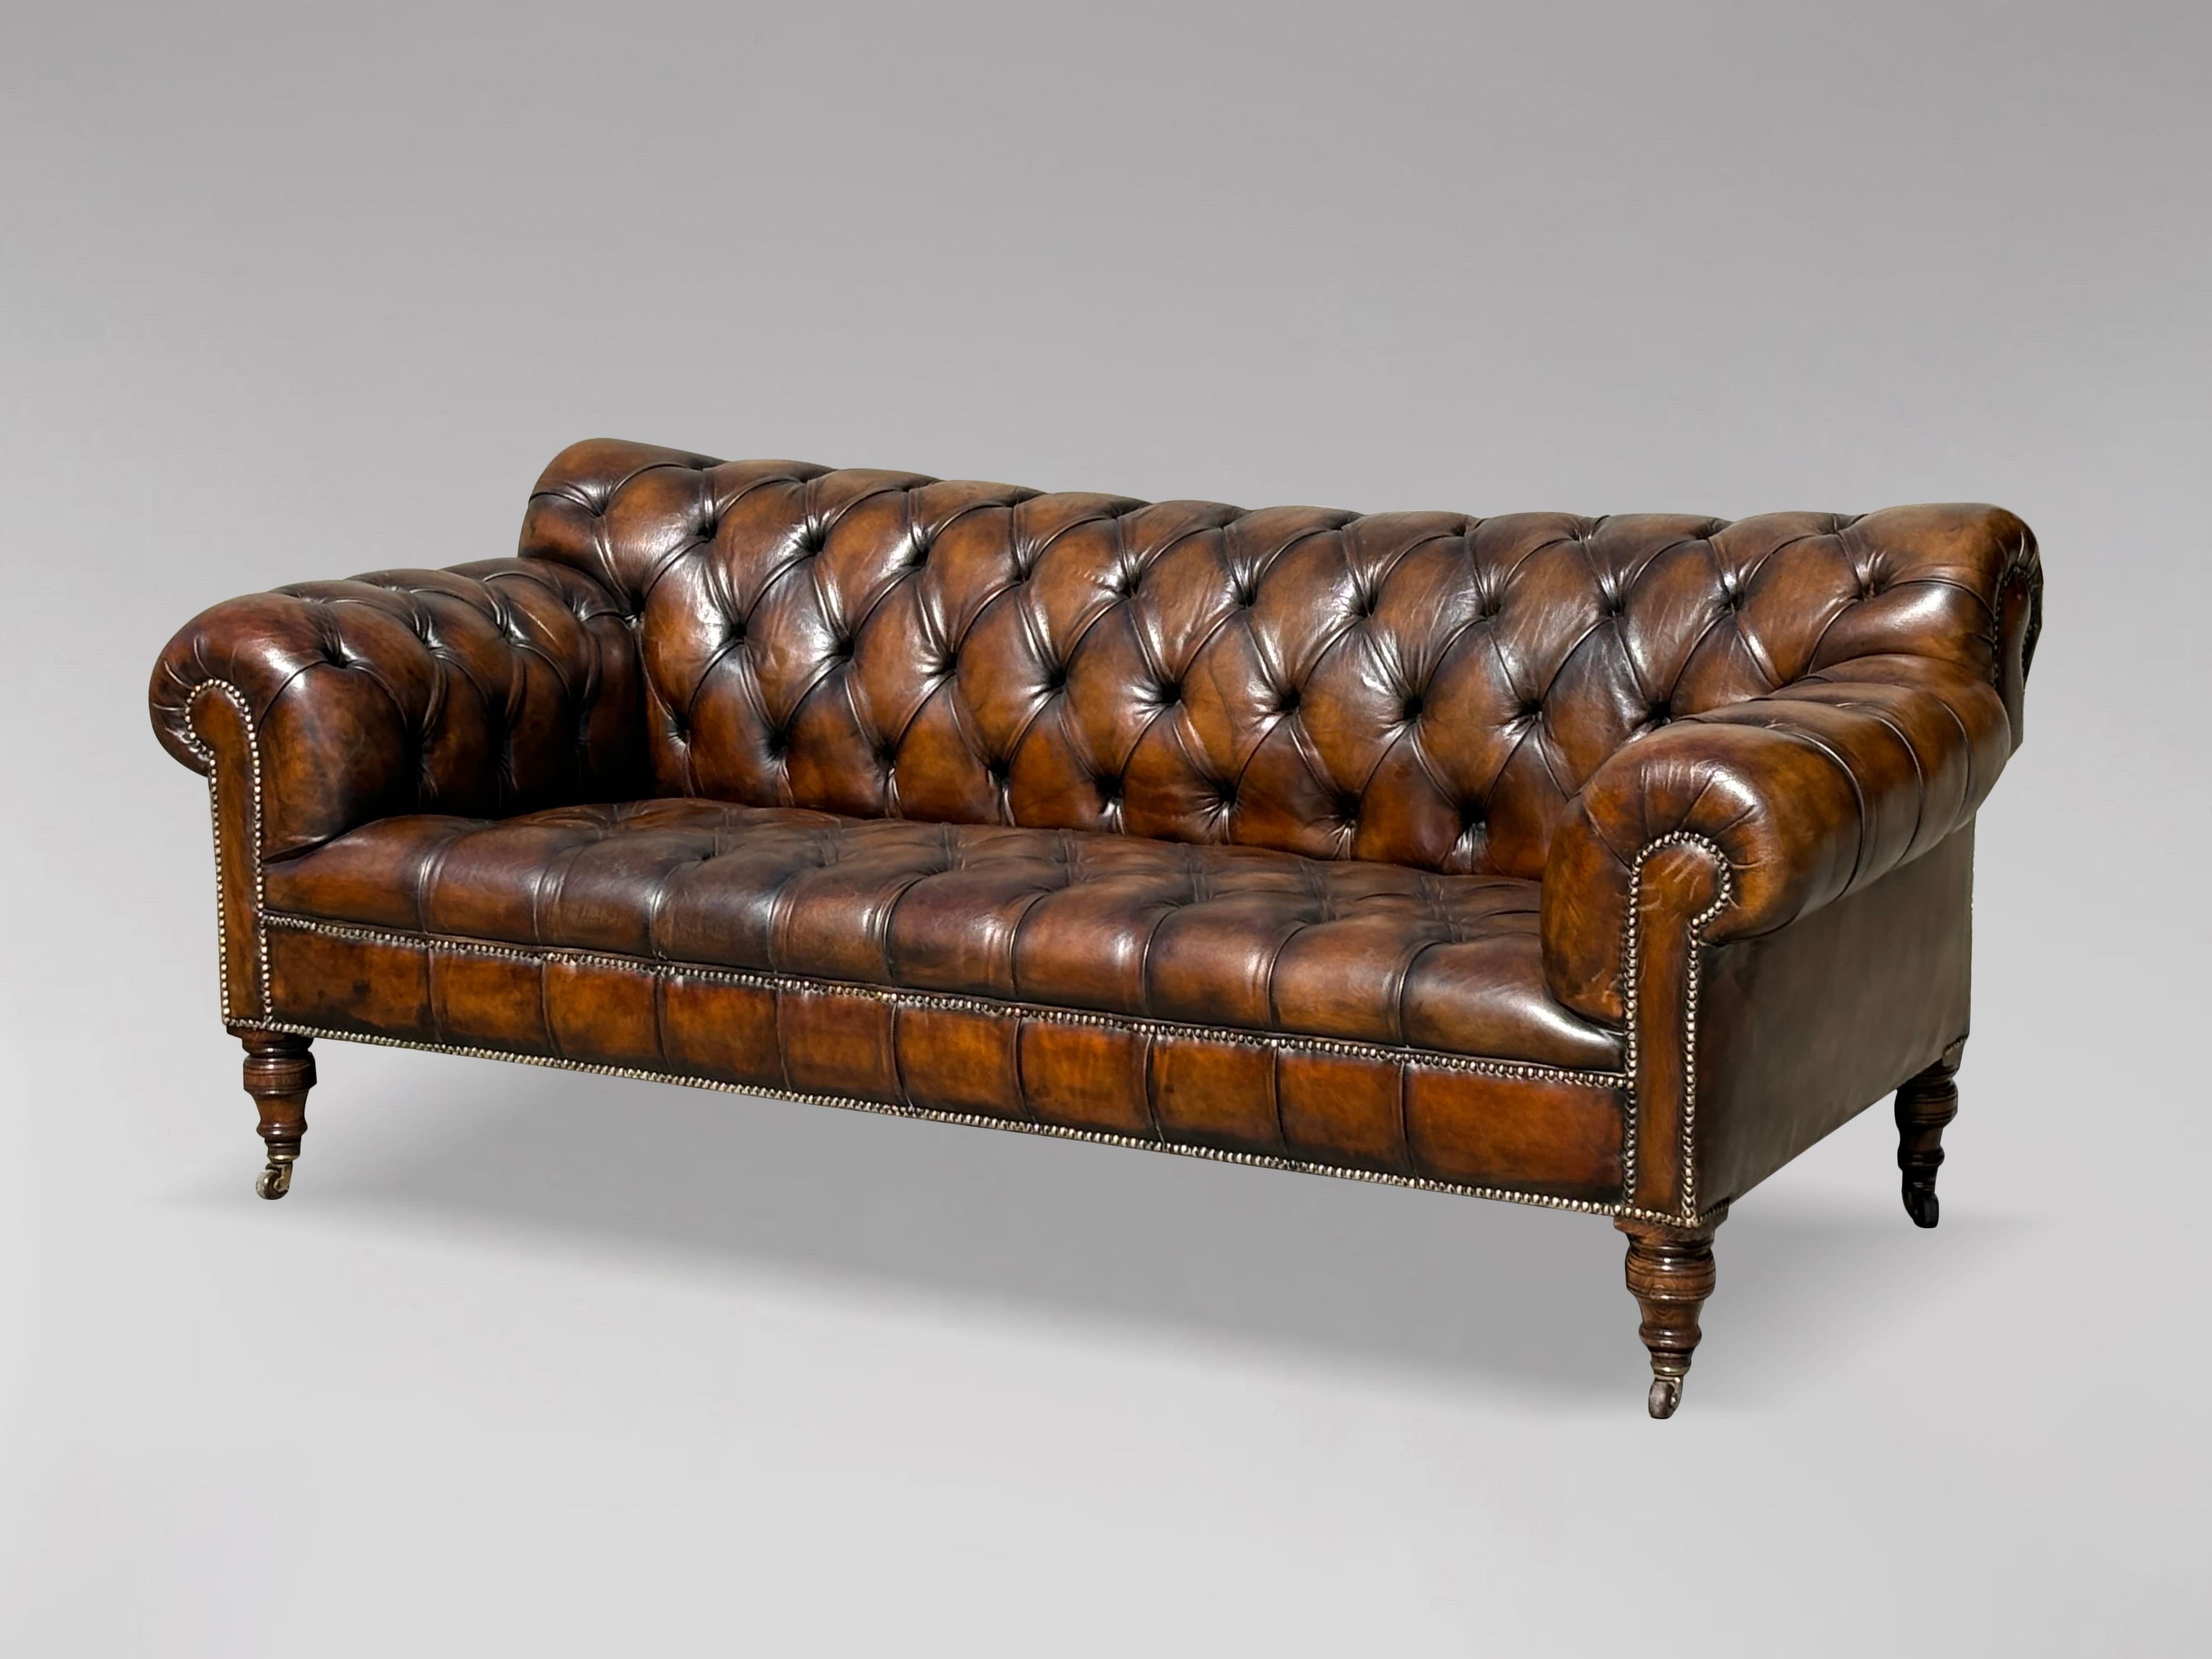 Eine atemberaubende 19. Jahrhundert, viktorianischen Zeit, große Drei-Sitzer-Leder-Taste nach unten braune Farbe Chesterfield Sofa. Mit der originalen braunen Lederhaut, die gereinigt und poliert wurde, was dem Qualitätsleder ein herrlich weiches